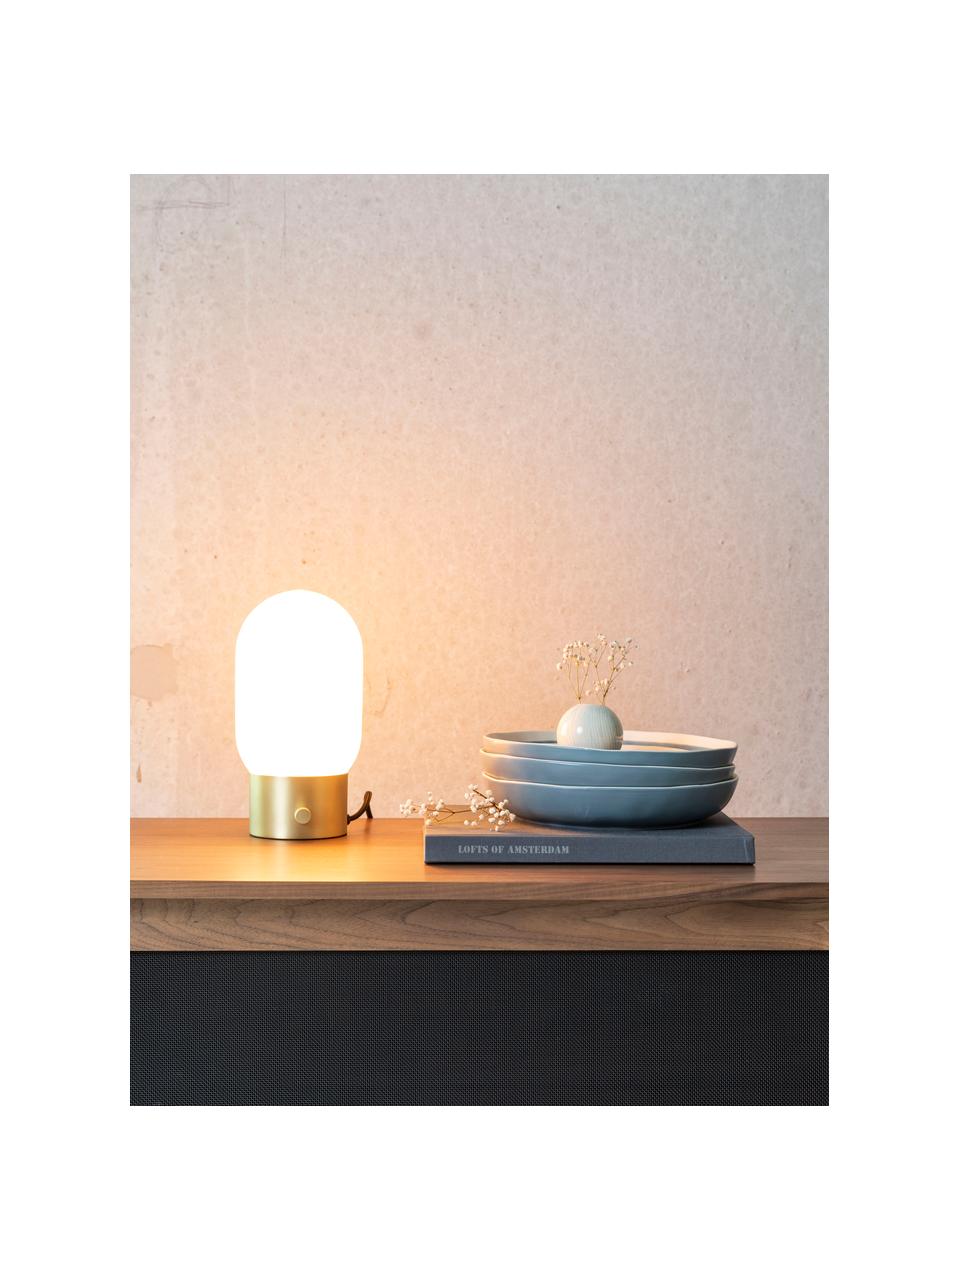 Kleine Dimmbare Nachttischlampe Urban mit USB-Anschluss, Lampenschirm: Opalglas, Lampenfuß: Metall, beschichtet, Weiß, Goldfarben, Ø 13 x H 25 cm